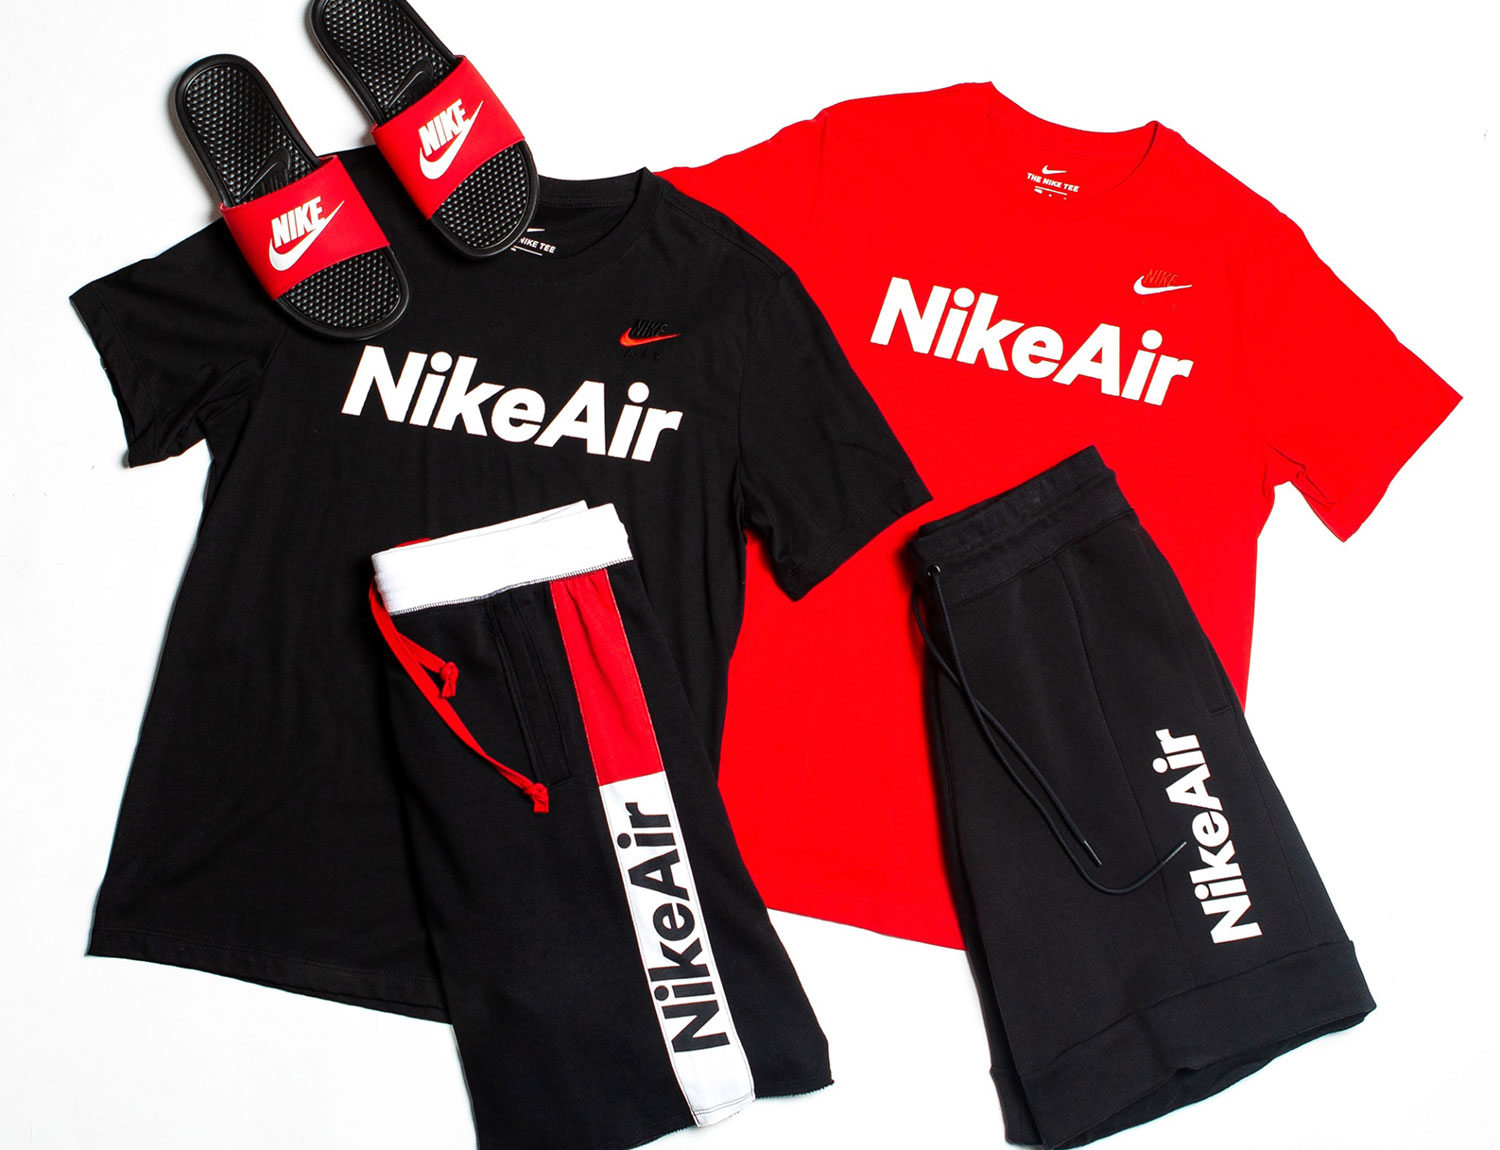 Nike Air Shirts Shorts and Slide 